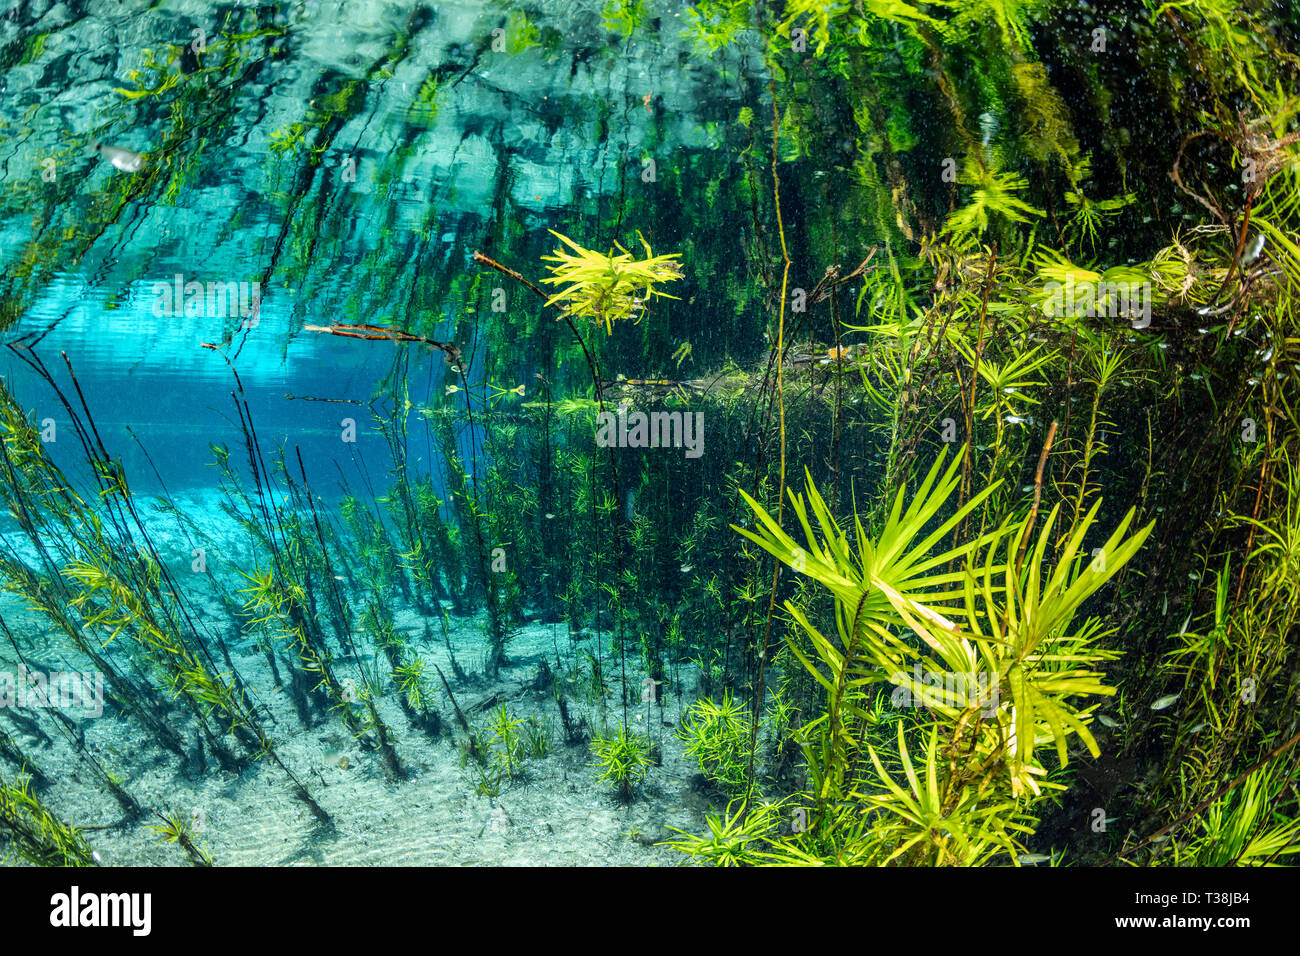 Impressionen vom Aquario Natural Spring, Bonito, Mato Grosso do Sul, Brasilien Stockfoto